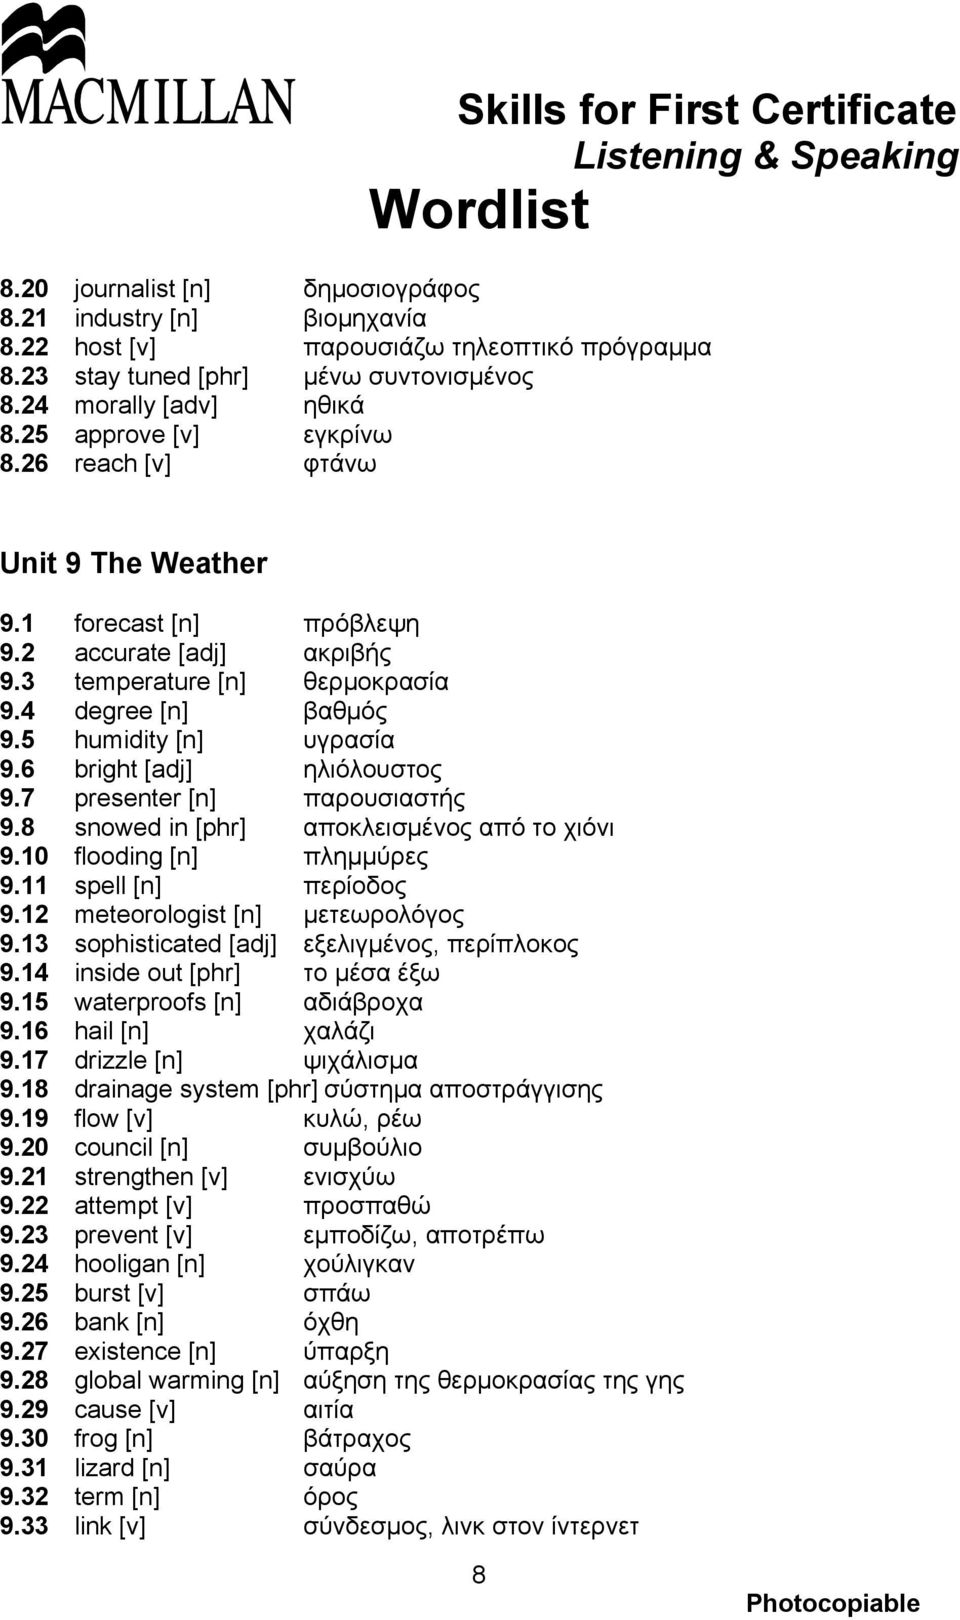 6 bright [adj] ηλιόλουστος 9.7 presenter [n] παρουσιαστής 9.8 snowed in [phr] αποκλεισμένος από το χιόνι 9.10 flooding [n] πλημμύρες 9.11 spell [n] περίοδος 9.12 meteorologist [n] μετεωρολόγος 9.